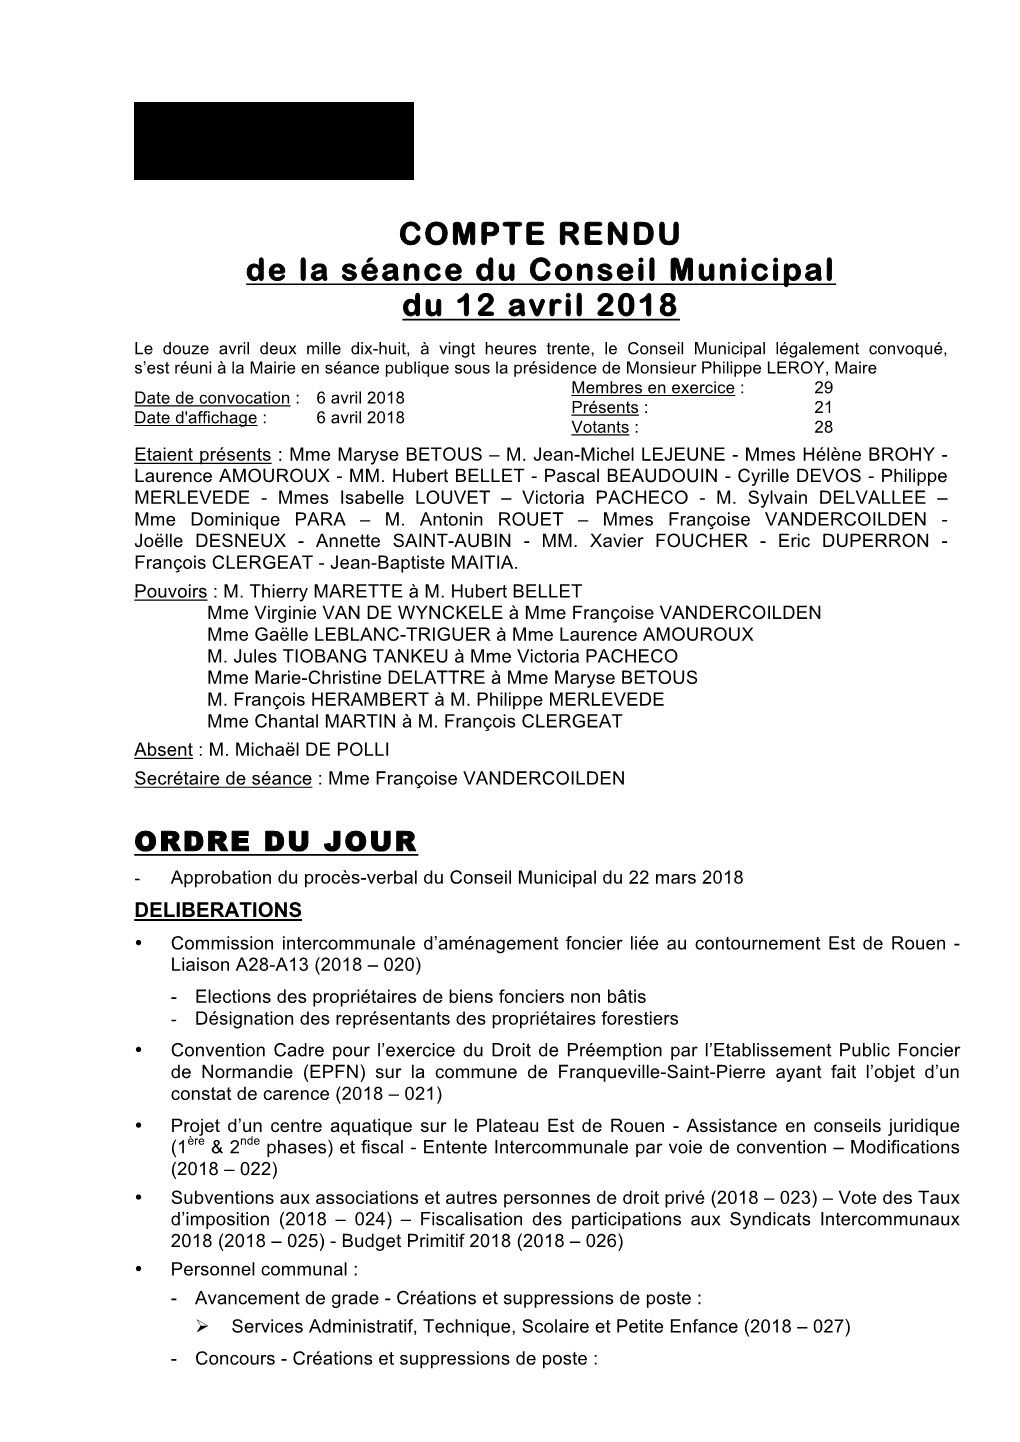 COMPTE RENDU De La Séance Du Conseil Municipal Du 12 Avril 2018